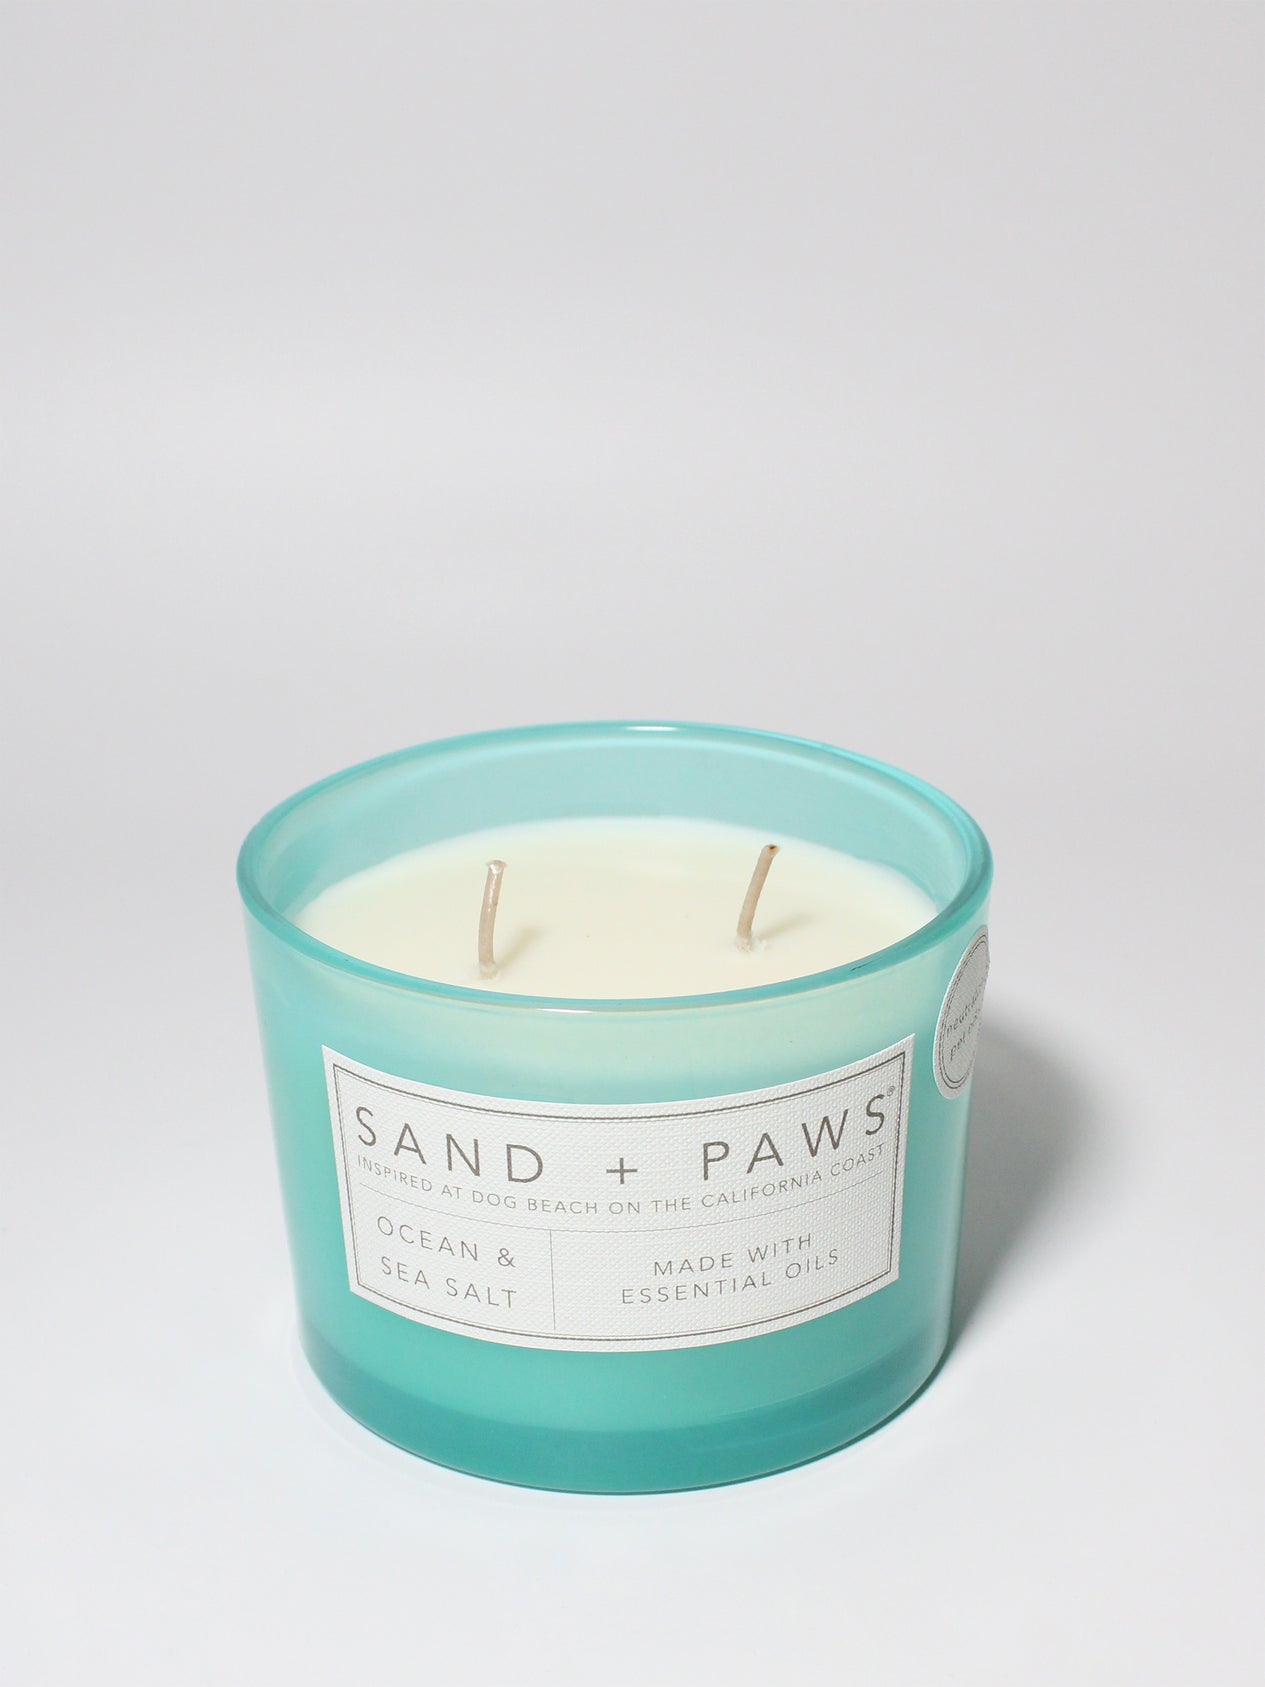 Sand + Paws Ocean & Sea Salt 12 oz scented candle – Sand + Fog